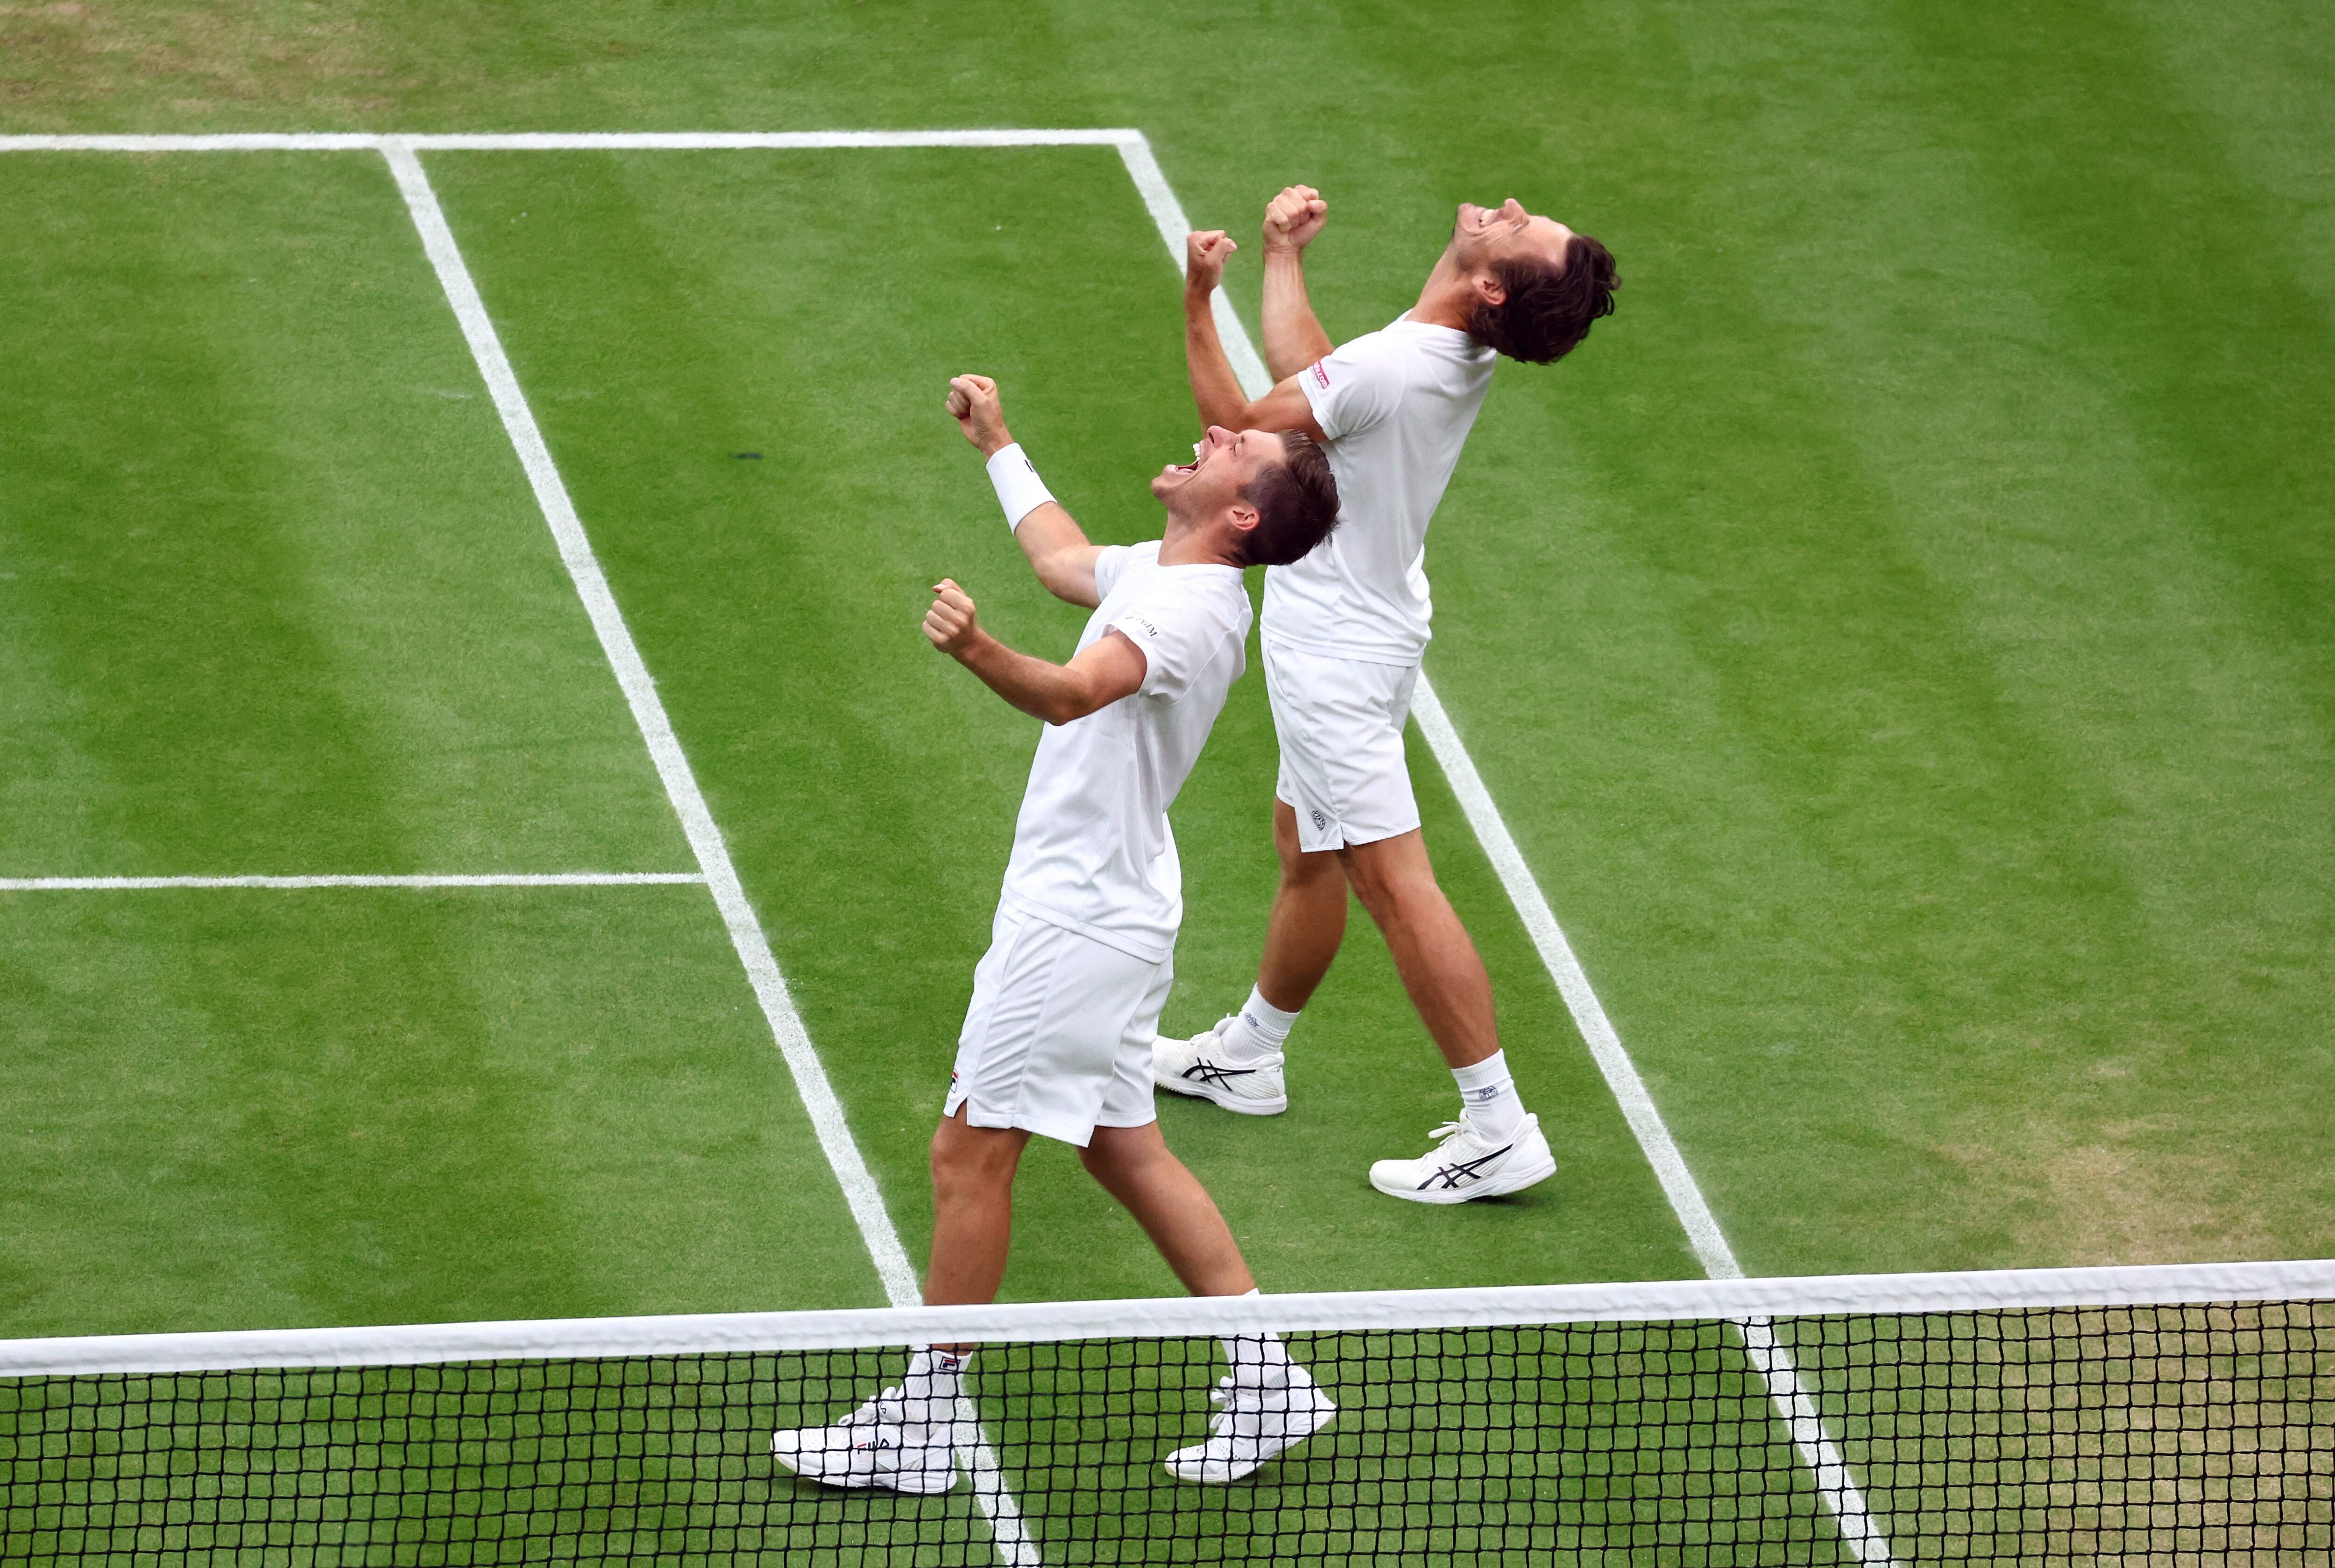 El británico Neal Skupski y el neerlandés Netherlands celebran el título de dobles de Wimbledon (REUTERS/Toby Melville)